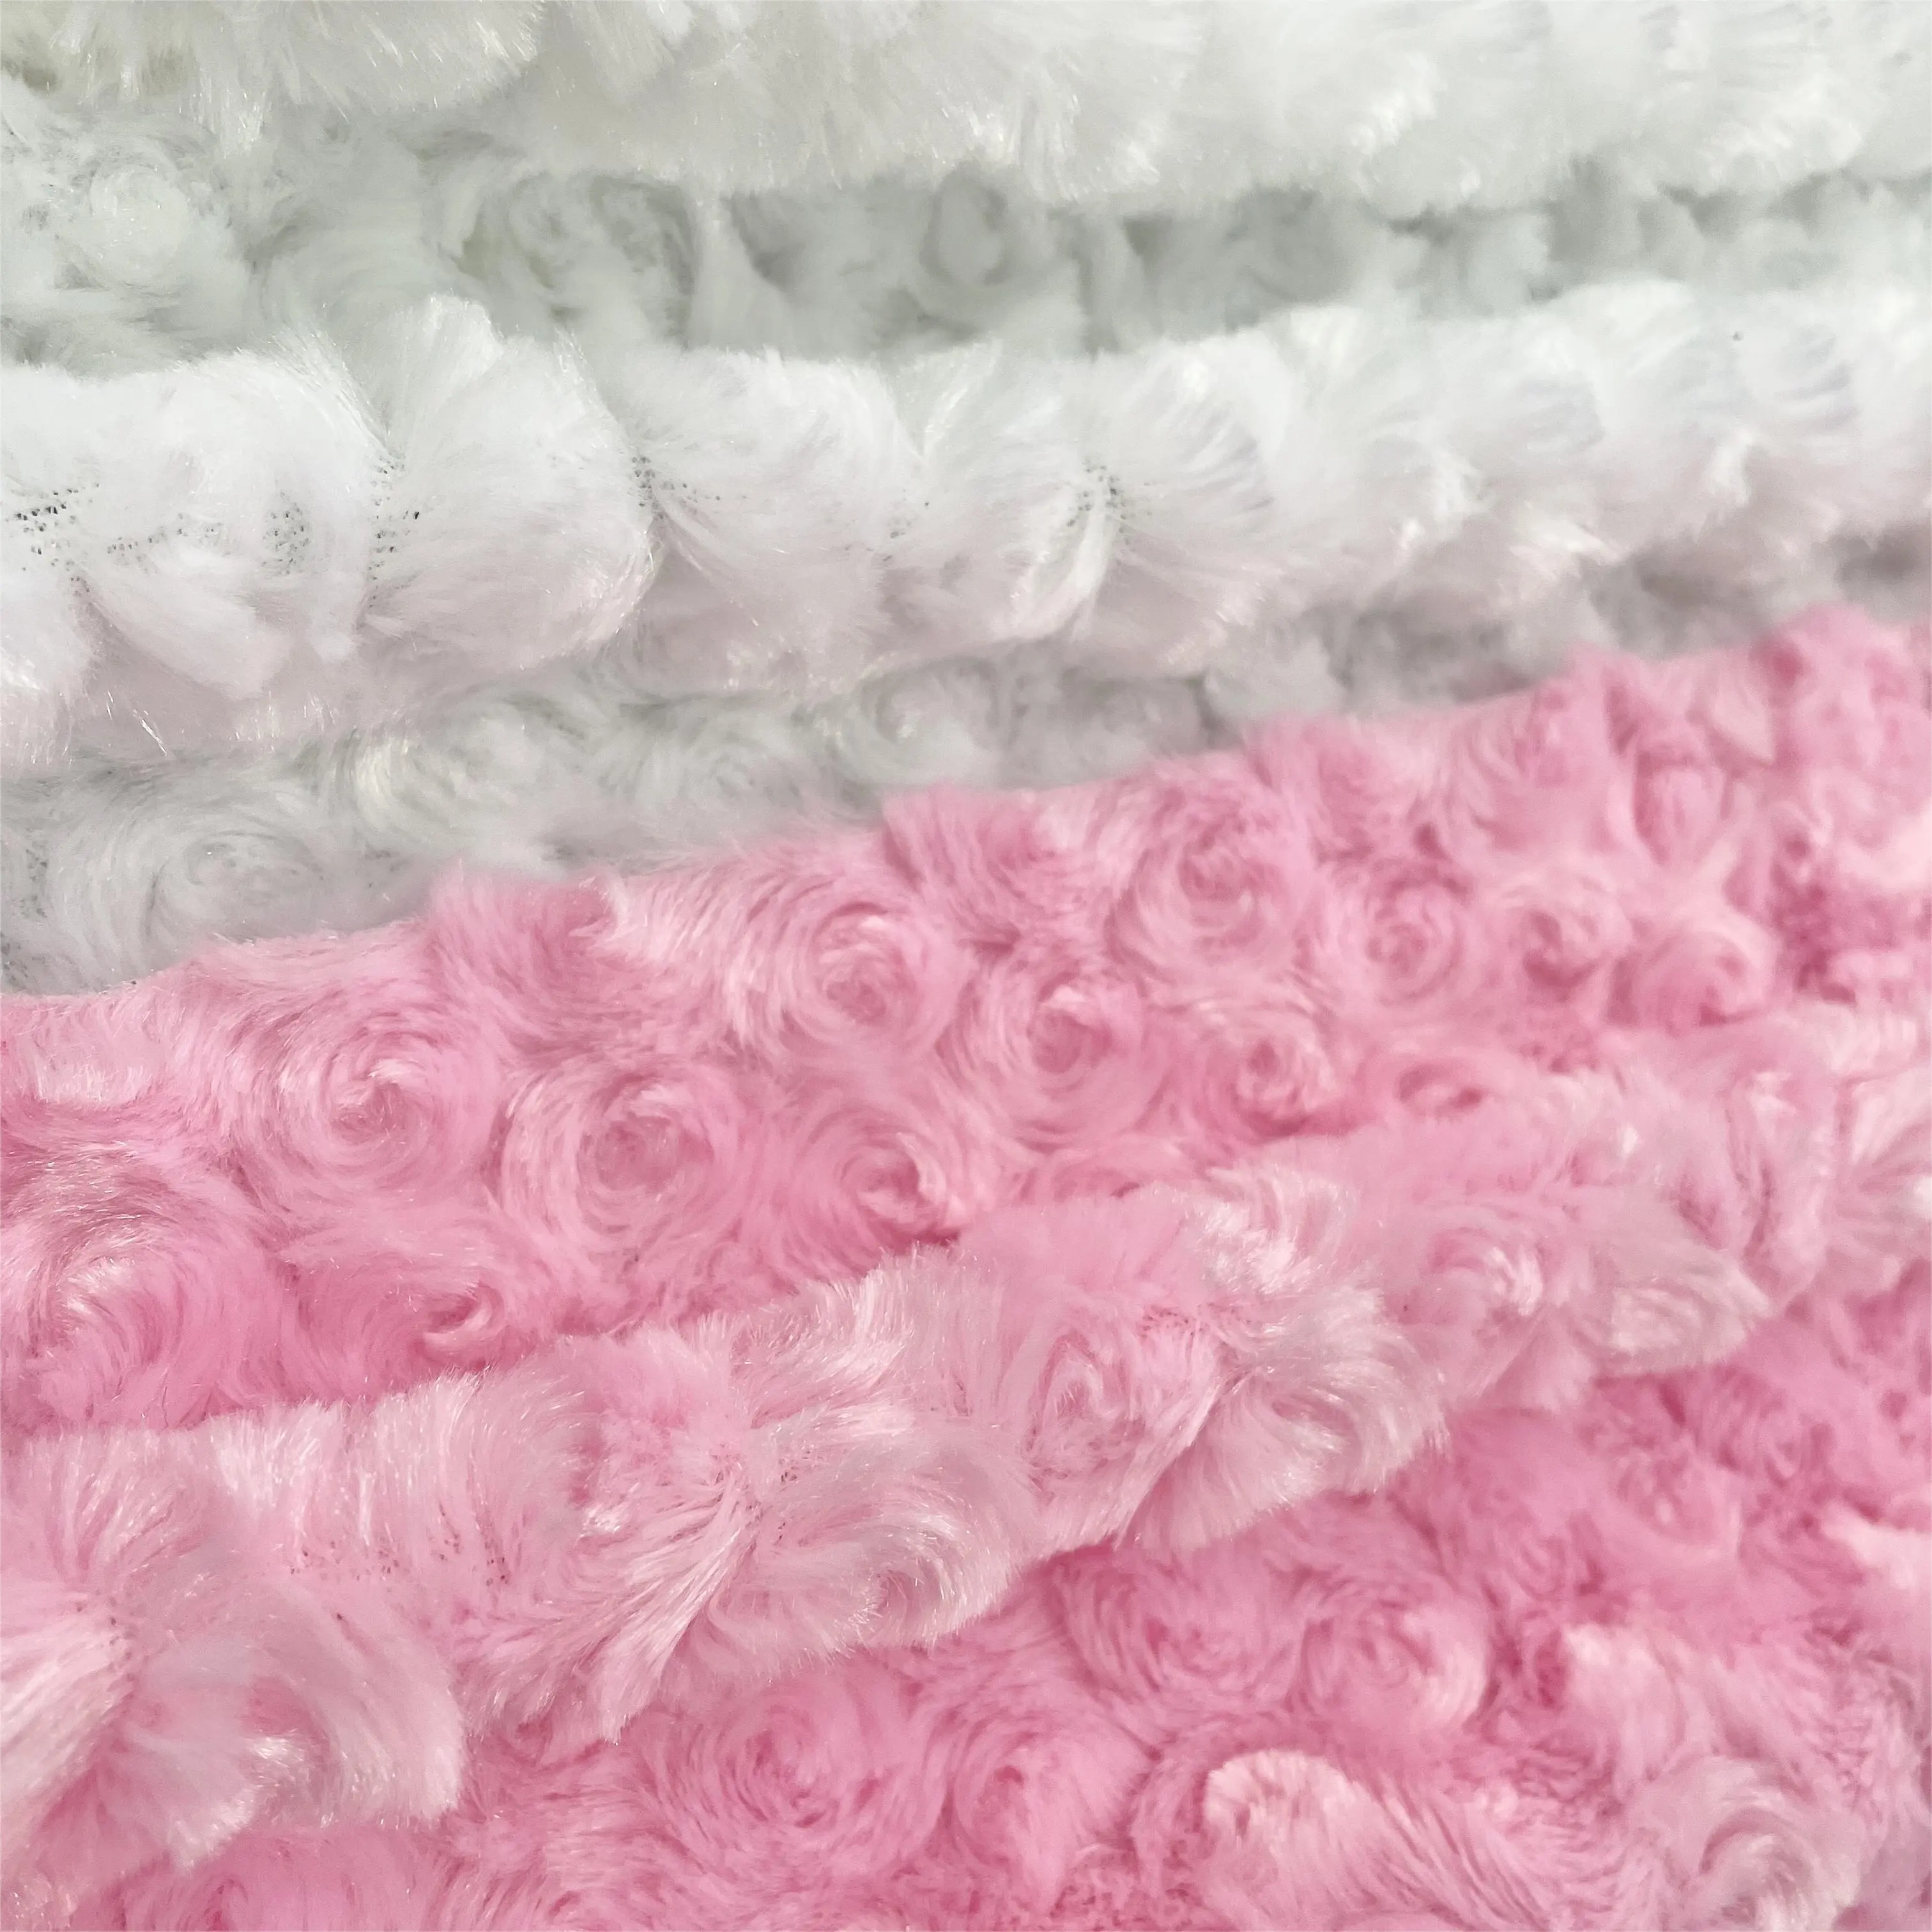 Rose Schleif ring Twist Flanell Spielzeug Haustier Kissen Teppich Stoff PV Samt Home Textil Kleidung